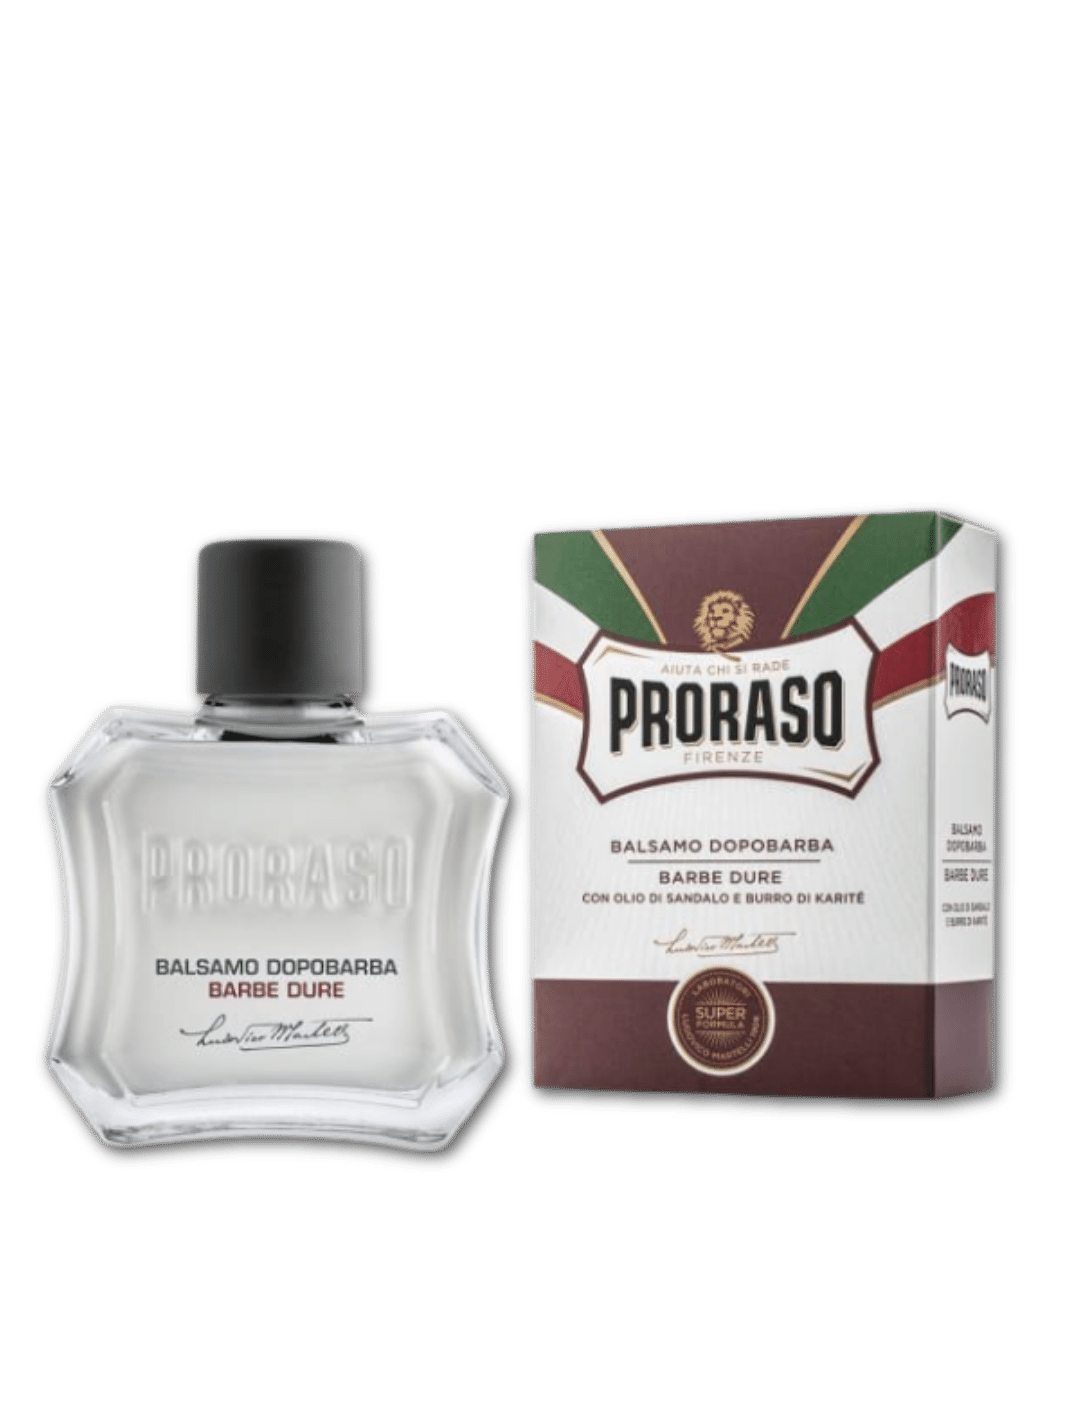 Proraso After Shave Balsam BALSAMO DOPOBARA 100ml, beruhigend und feuchtigkeitsspendend, erhältlich bei Phullcutz.